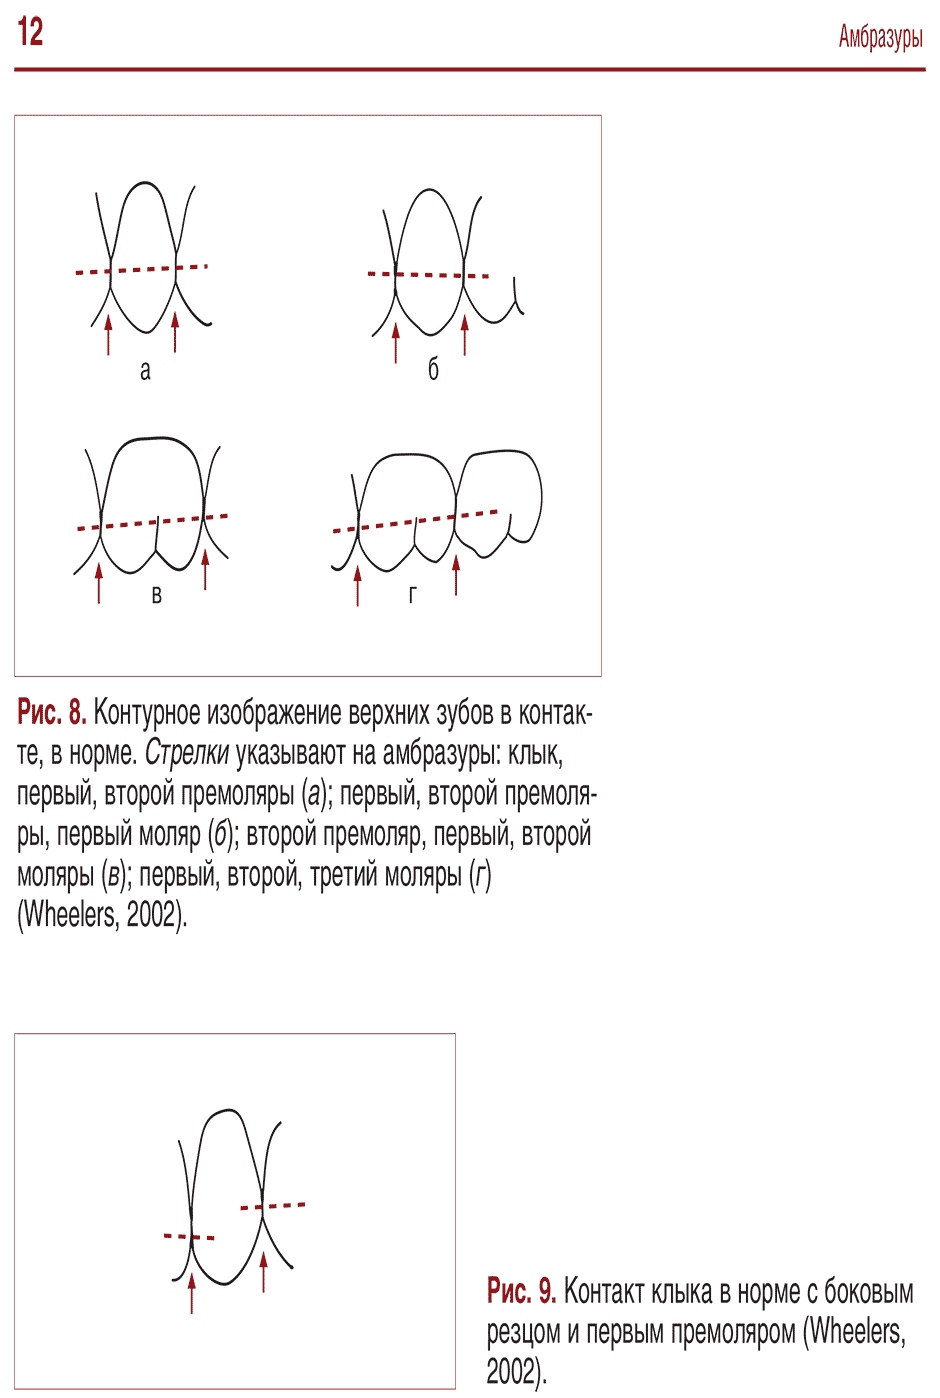 Рис. 9. Контакт клыка в норме с боковым резцом и первым премоляром (Wheelers, 2002).